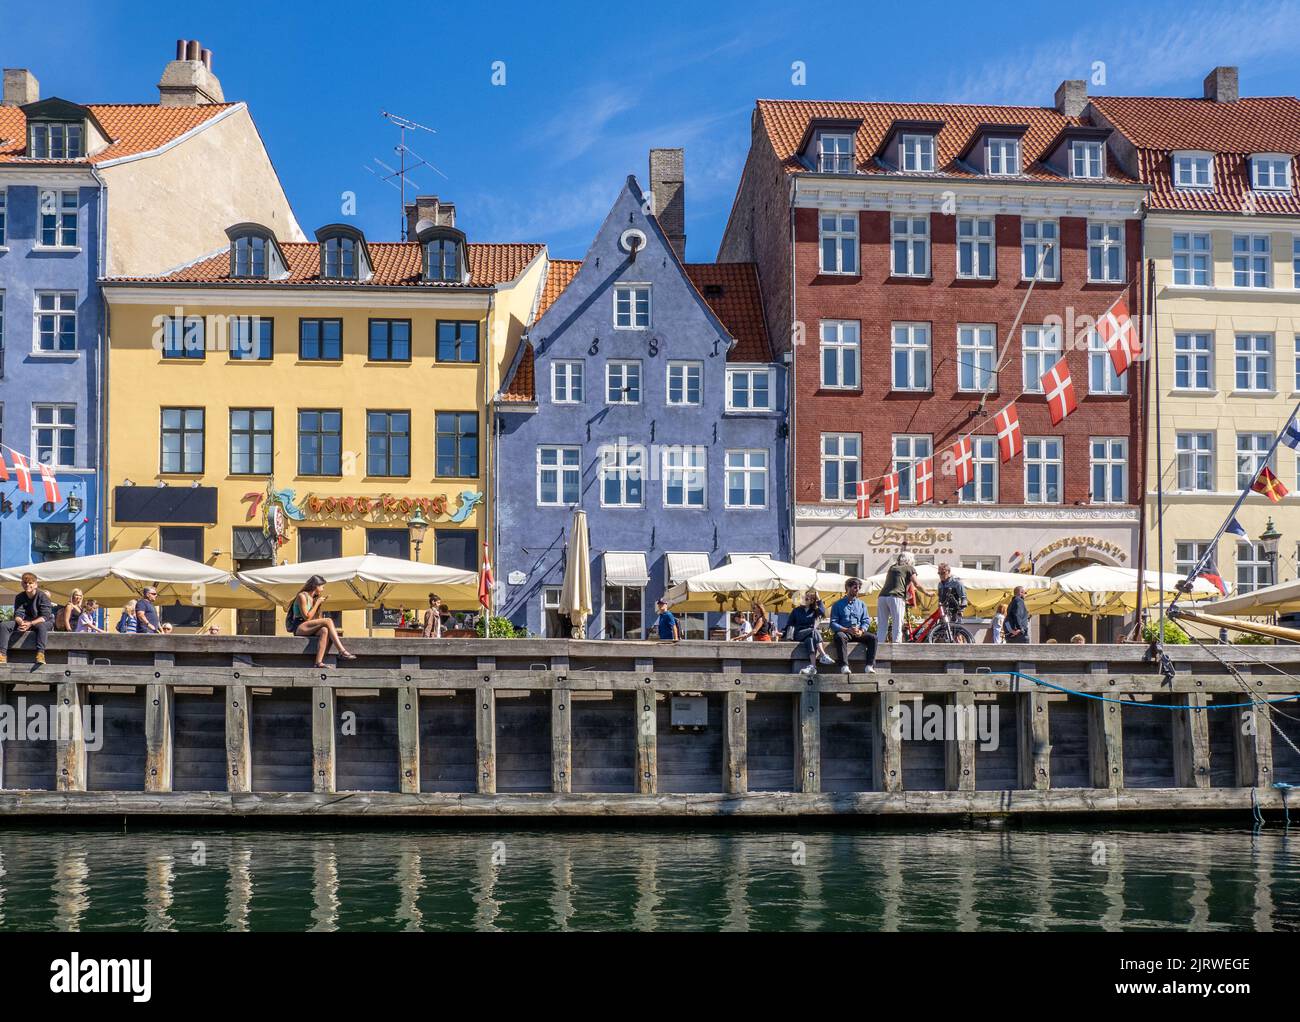 Détente au soleil à la destination touristique populaire de Nyhavn un canal bordé de 17th C coloré abrite des cafés et des bars - Copenhague Danemark Banque D'Images